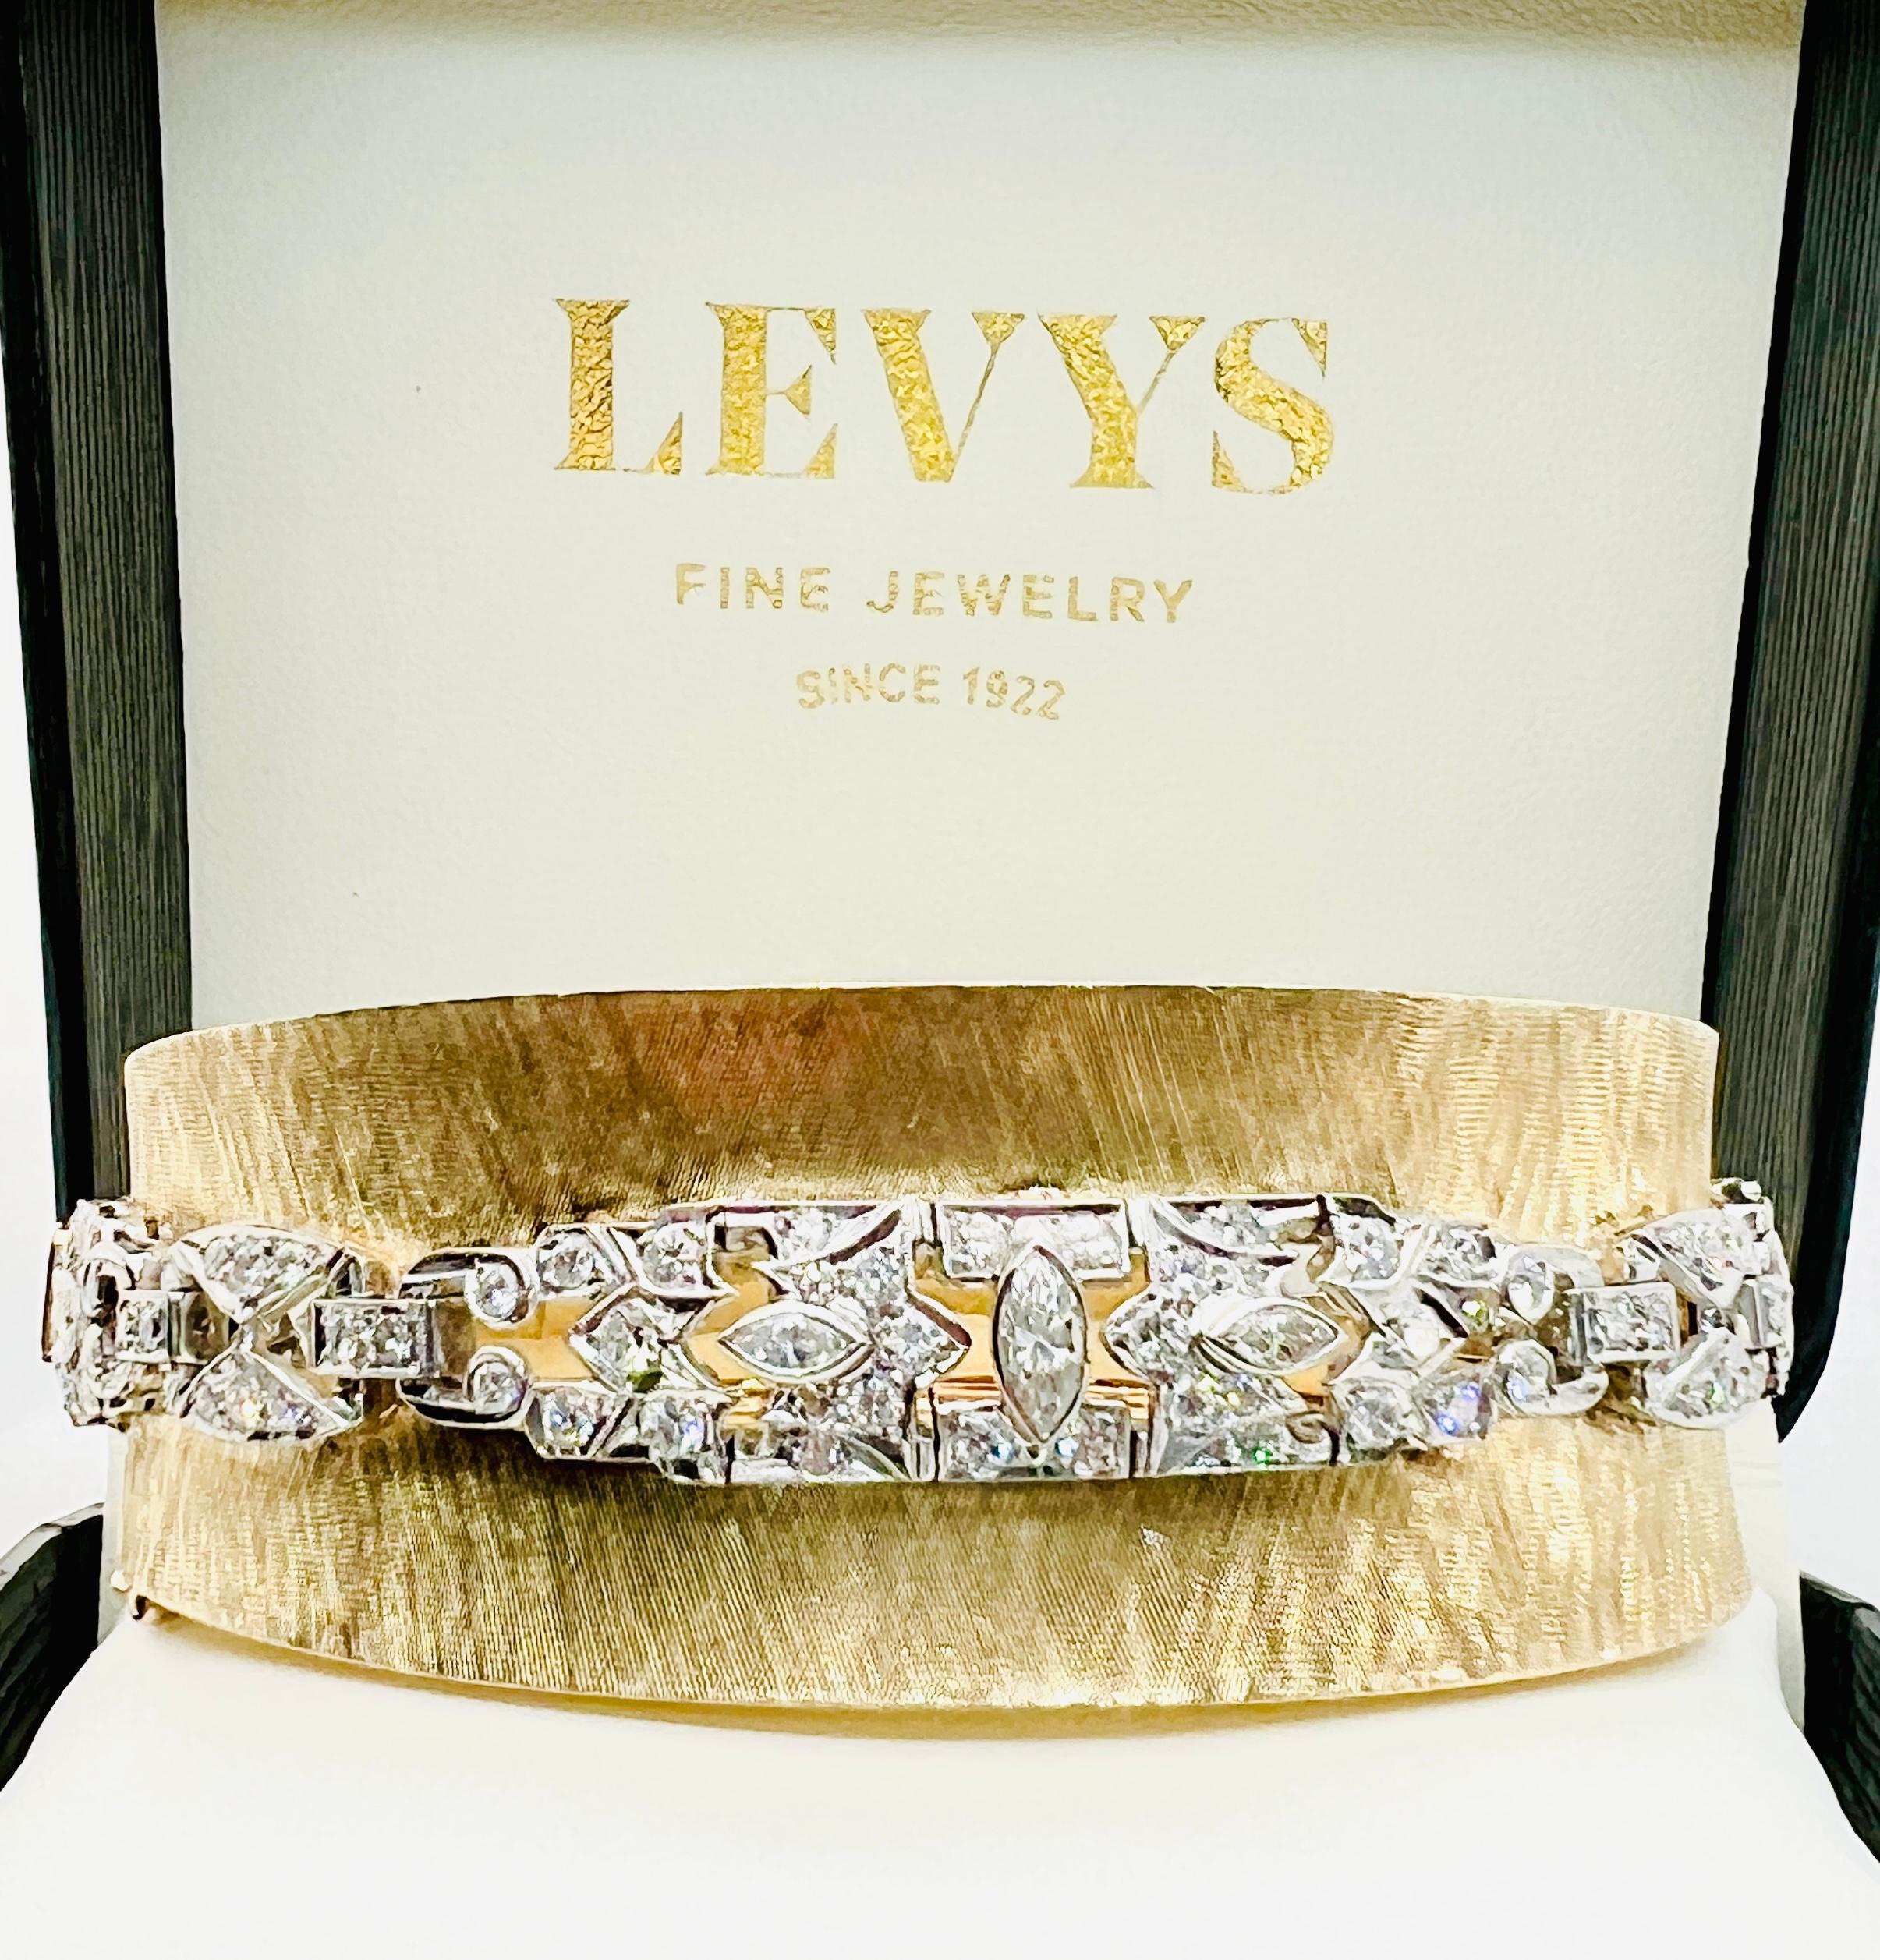 Ce bracelet est vraiment phénoménal ! Fabriqué en or jaune 14K avec une belle gravure. Le bracelet a une forme légèrement concave. Le long de la partie médiane du bracelet se trouve une étonnante rangée de diamants sertis en platine. Il y a 118